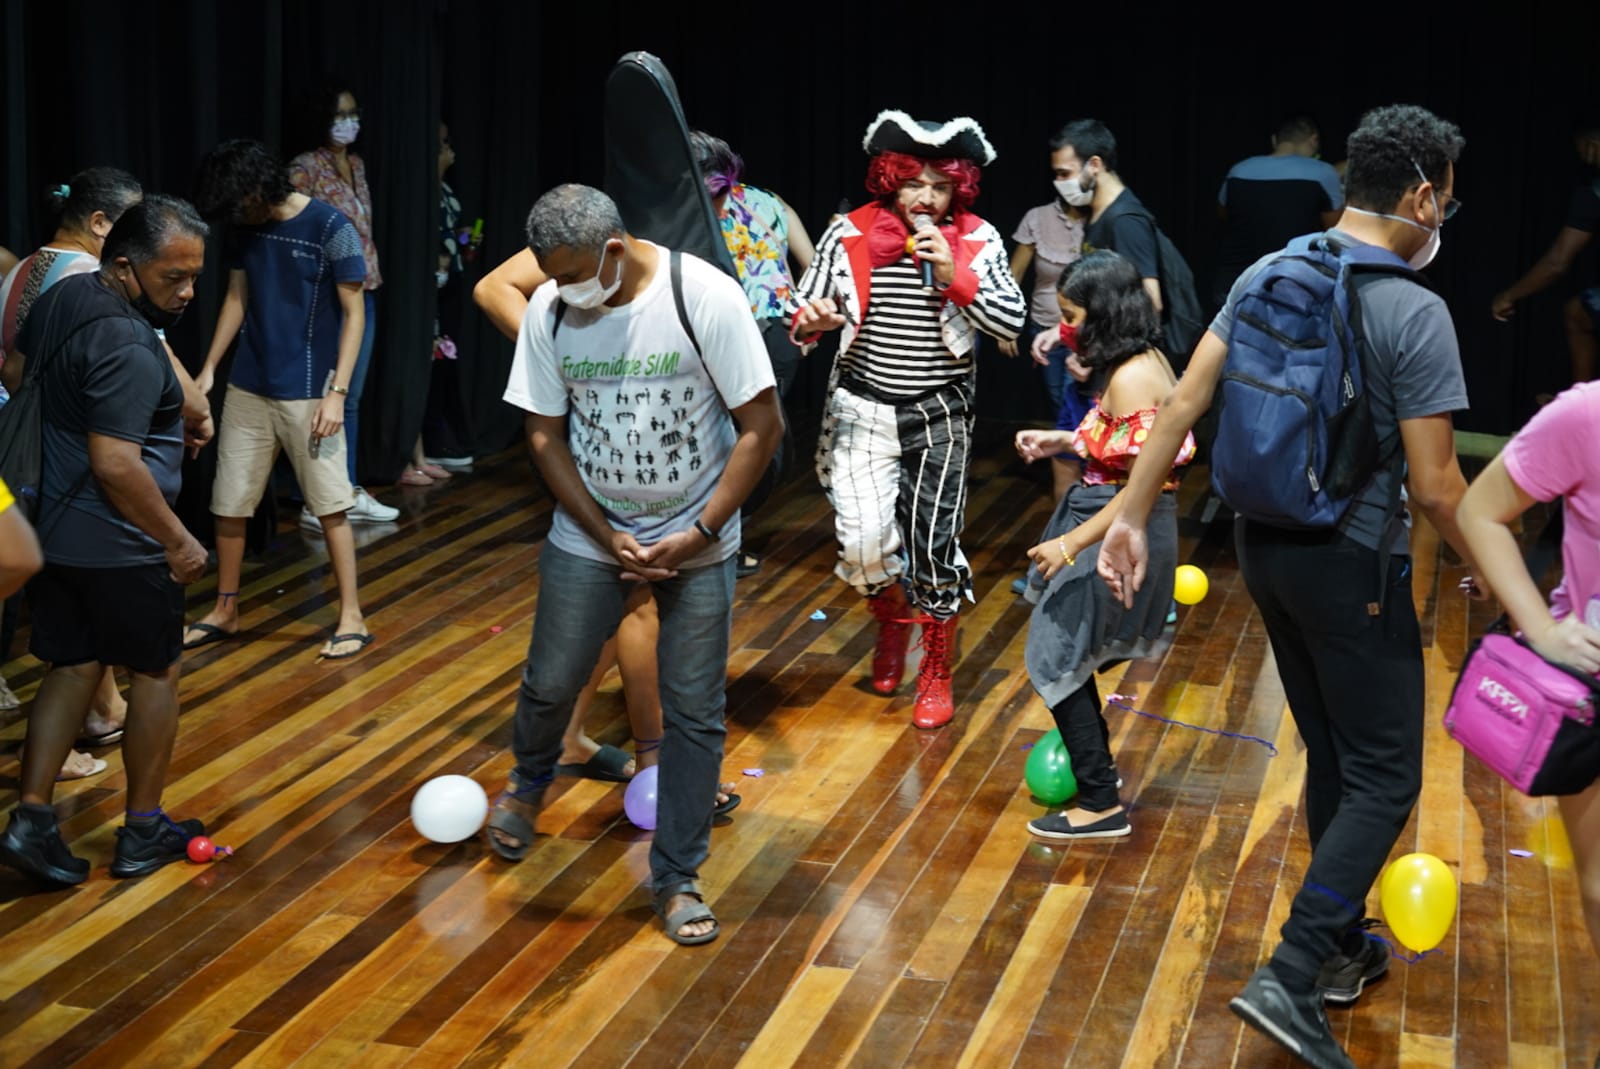 Você está visualizando atualmente Prefeitura inicia cursos de música, dança e teatro com acolhida divertida para os novos alunos